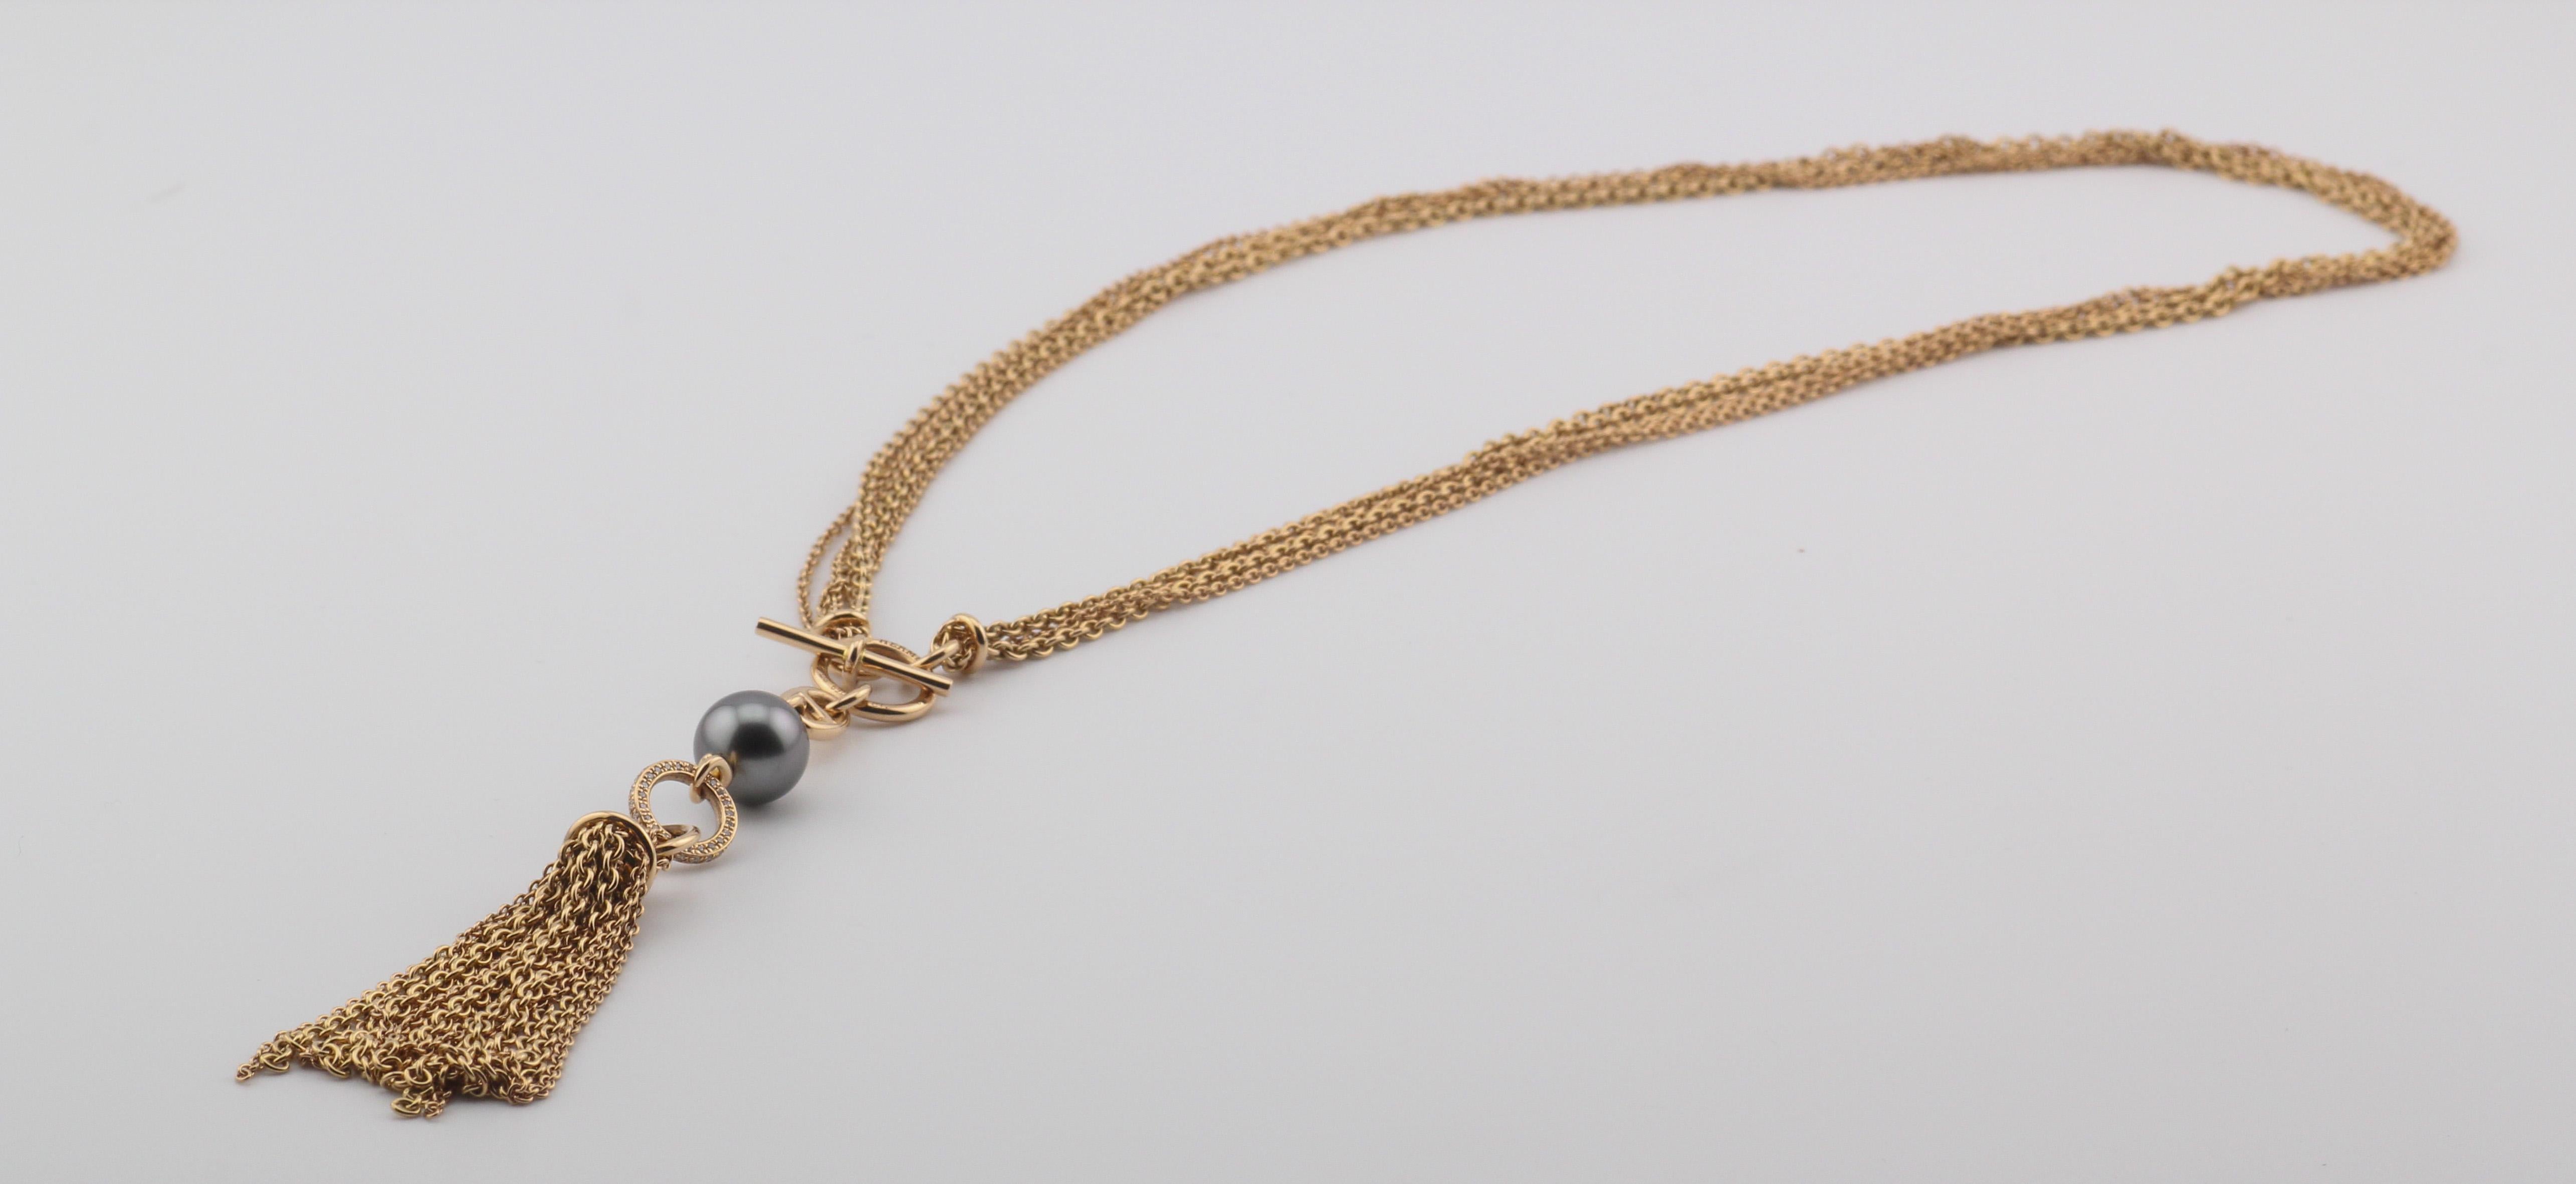 Brilliant Cut Hermes Chaine D'Ancre Black Pearl Diamond 18k Rose Gold Sautoir Tassel Necklace For Sale